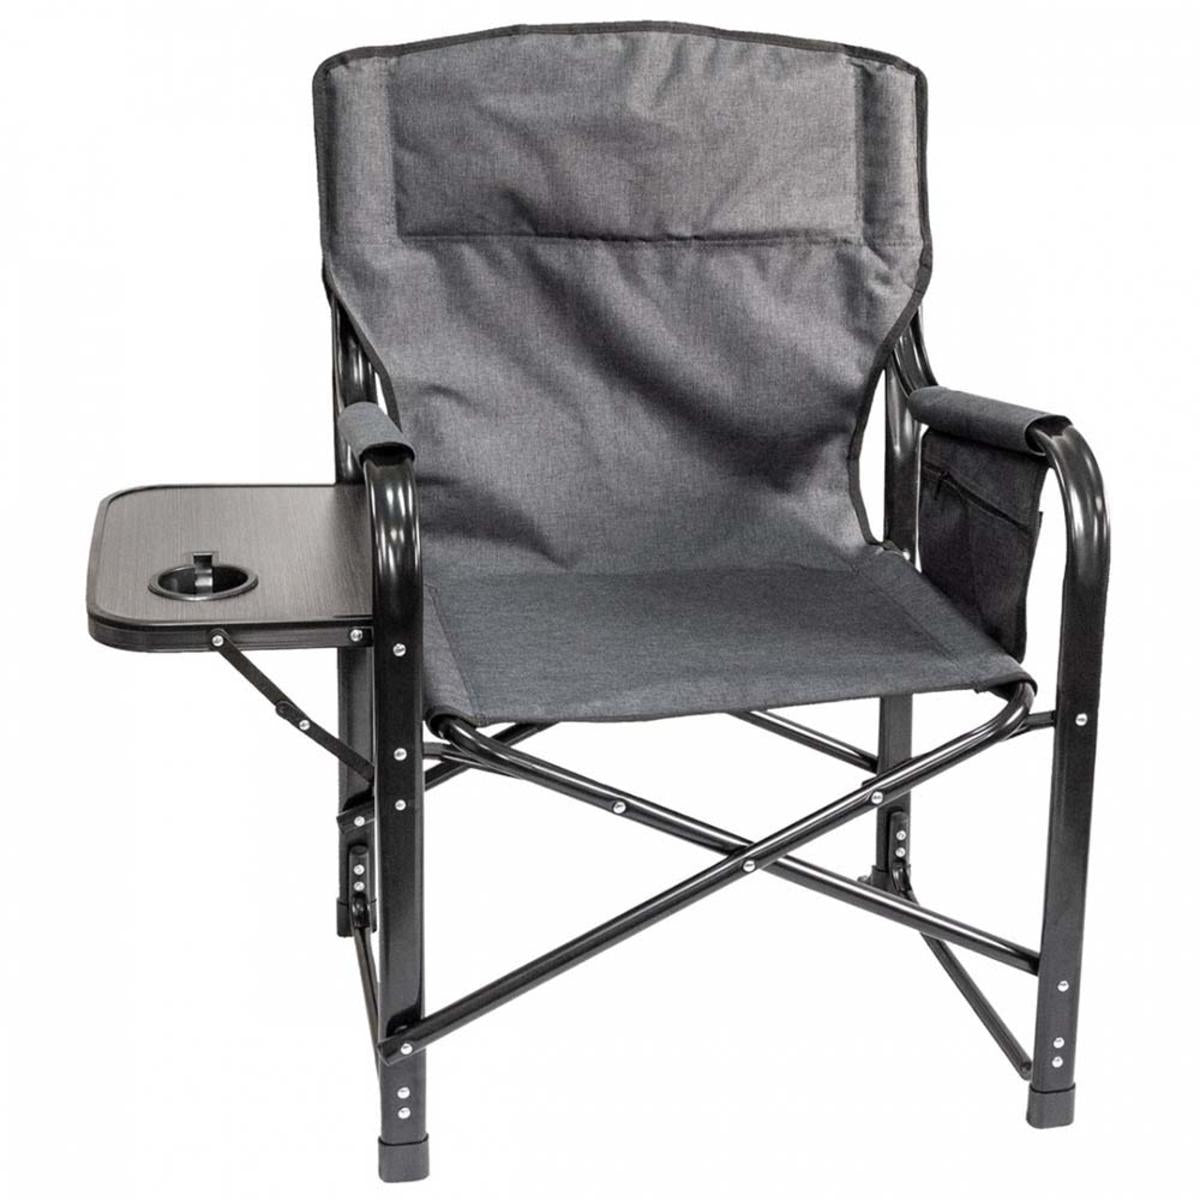 KUMA Outdoor Gear Bear Paws Chair with Side Table